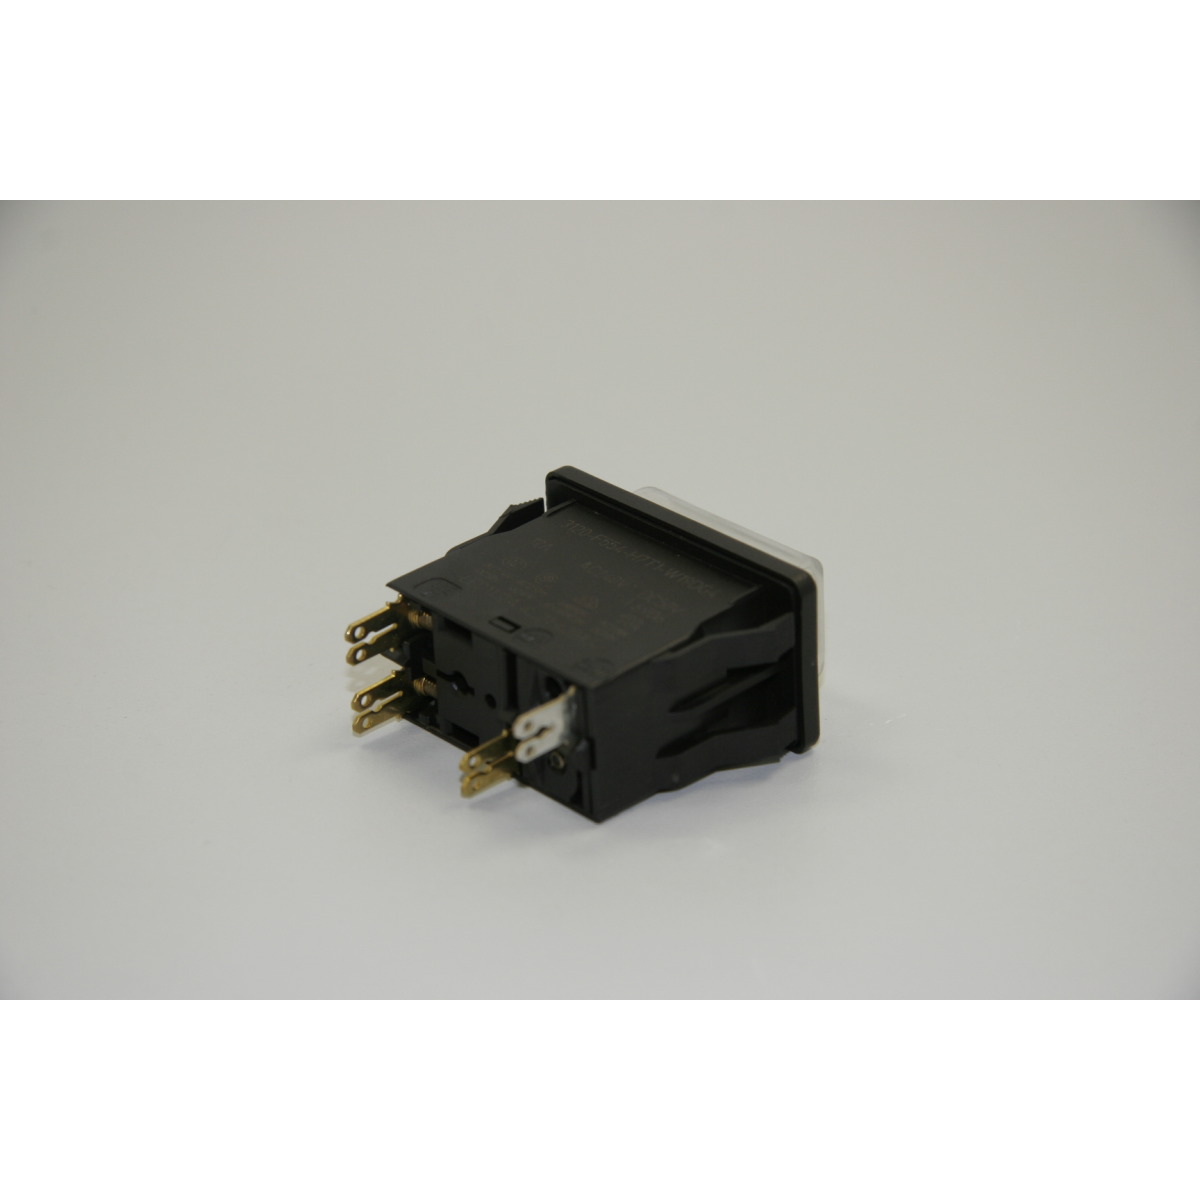 Schalter HDR-K 60-13 / 230V / 12A 1262180 / ON/OFF